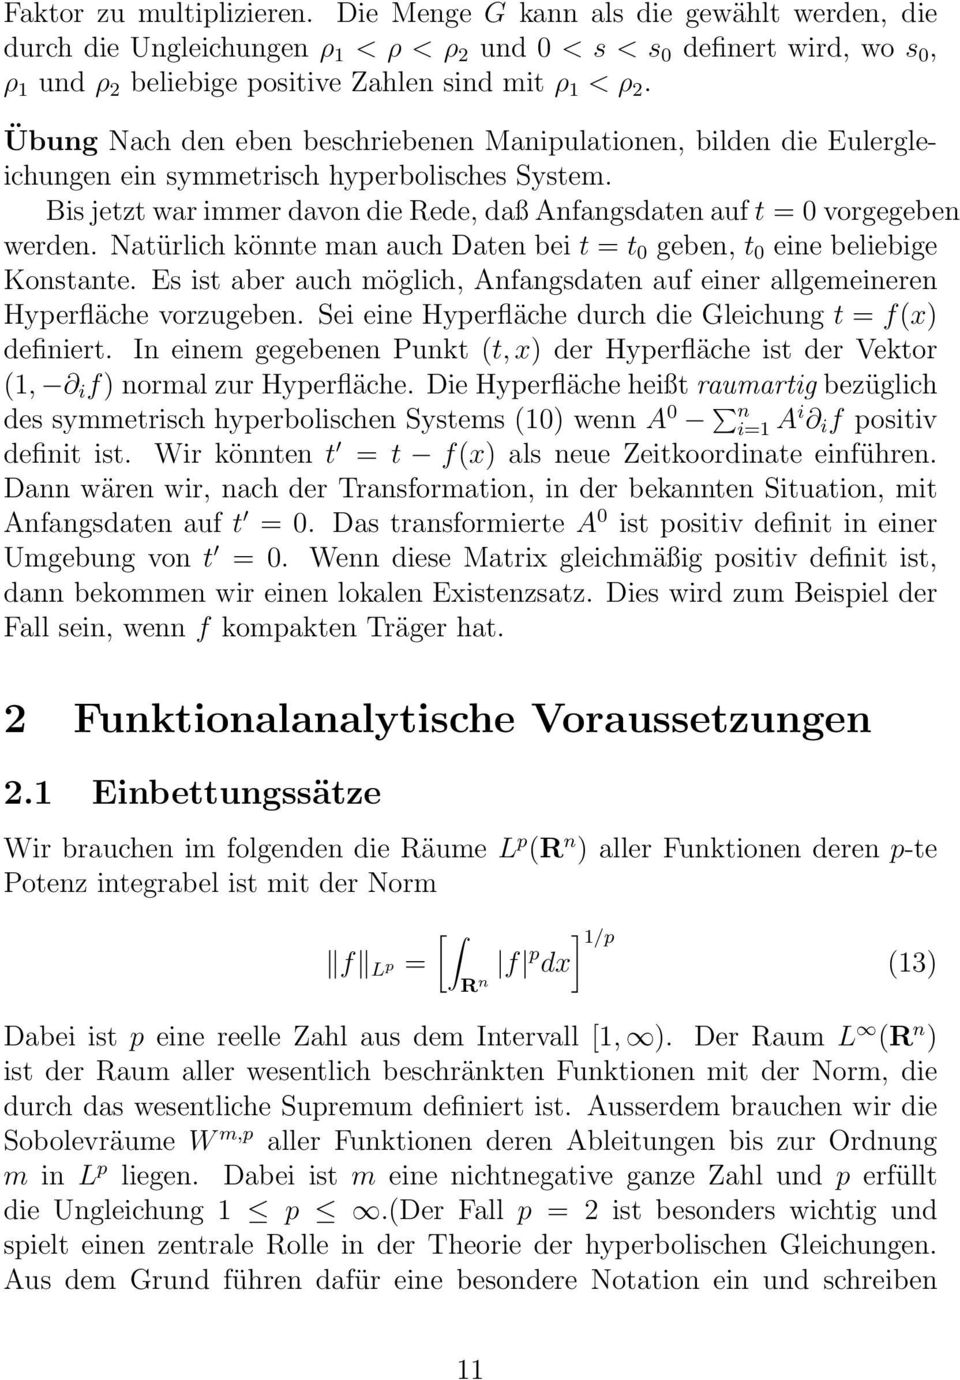 Übung Nach den eben beschriebenen Manipulationen, bilden die Eulergleichungen ein symmetrisch hyperbolisches System. Bis jetzt war immer davon die Rede, daß Anfangsdaten auf t = 0 vorgegeben werden.